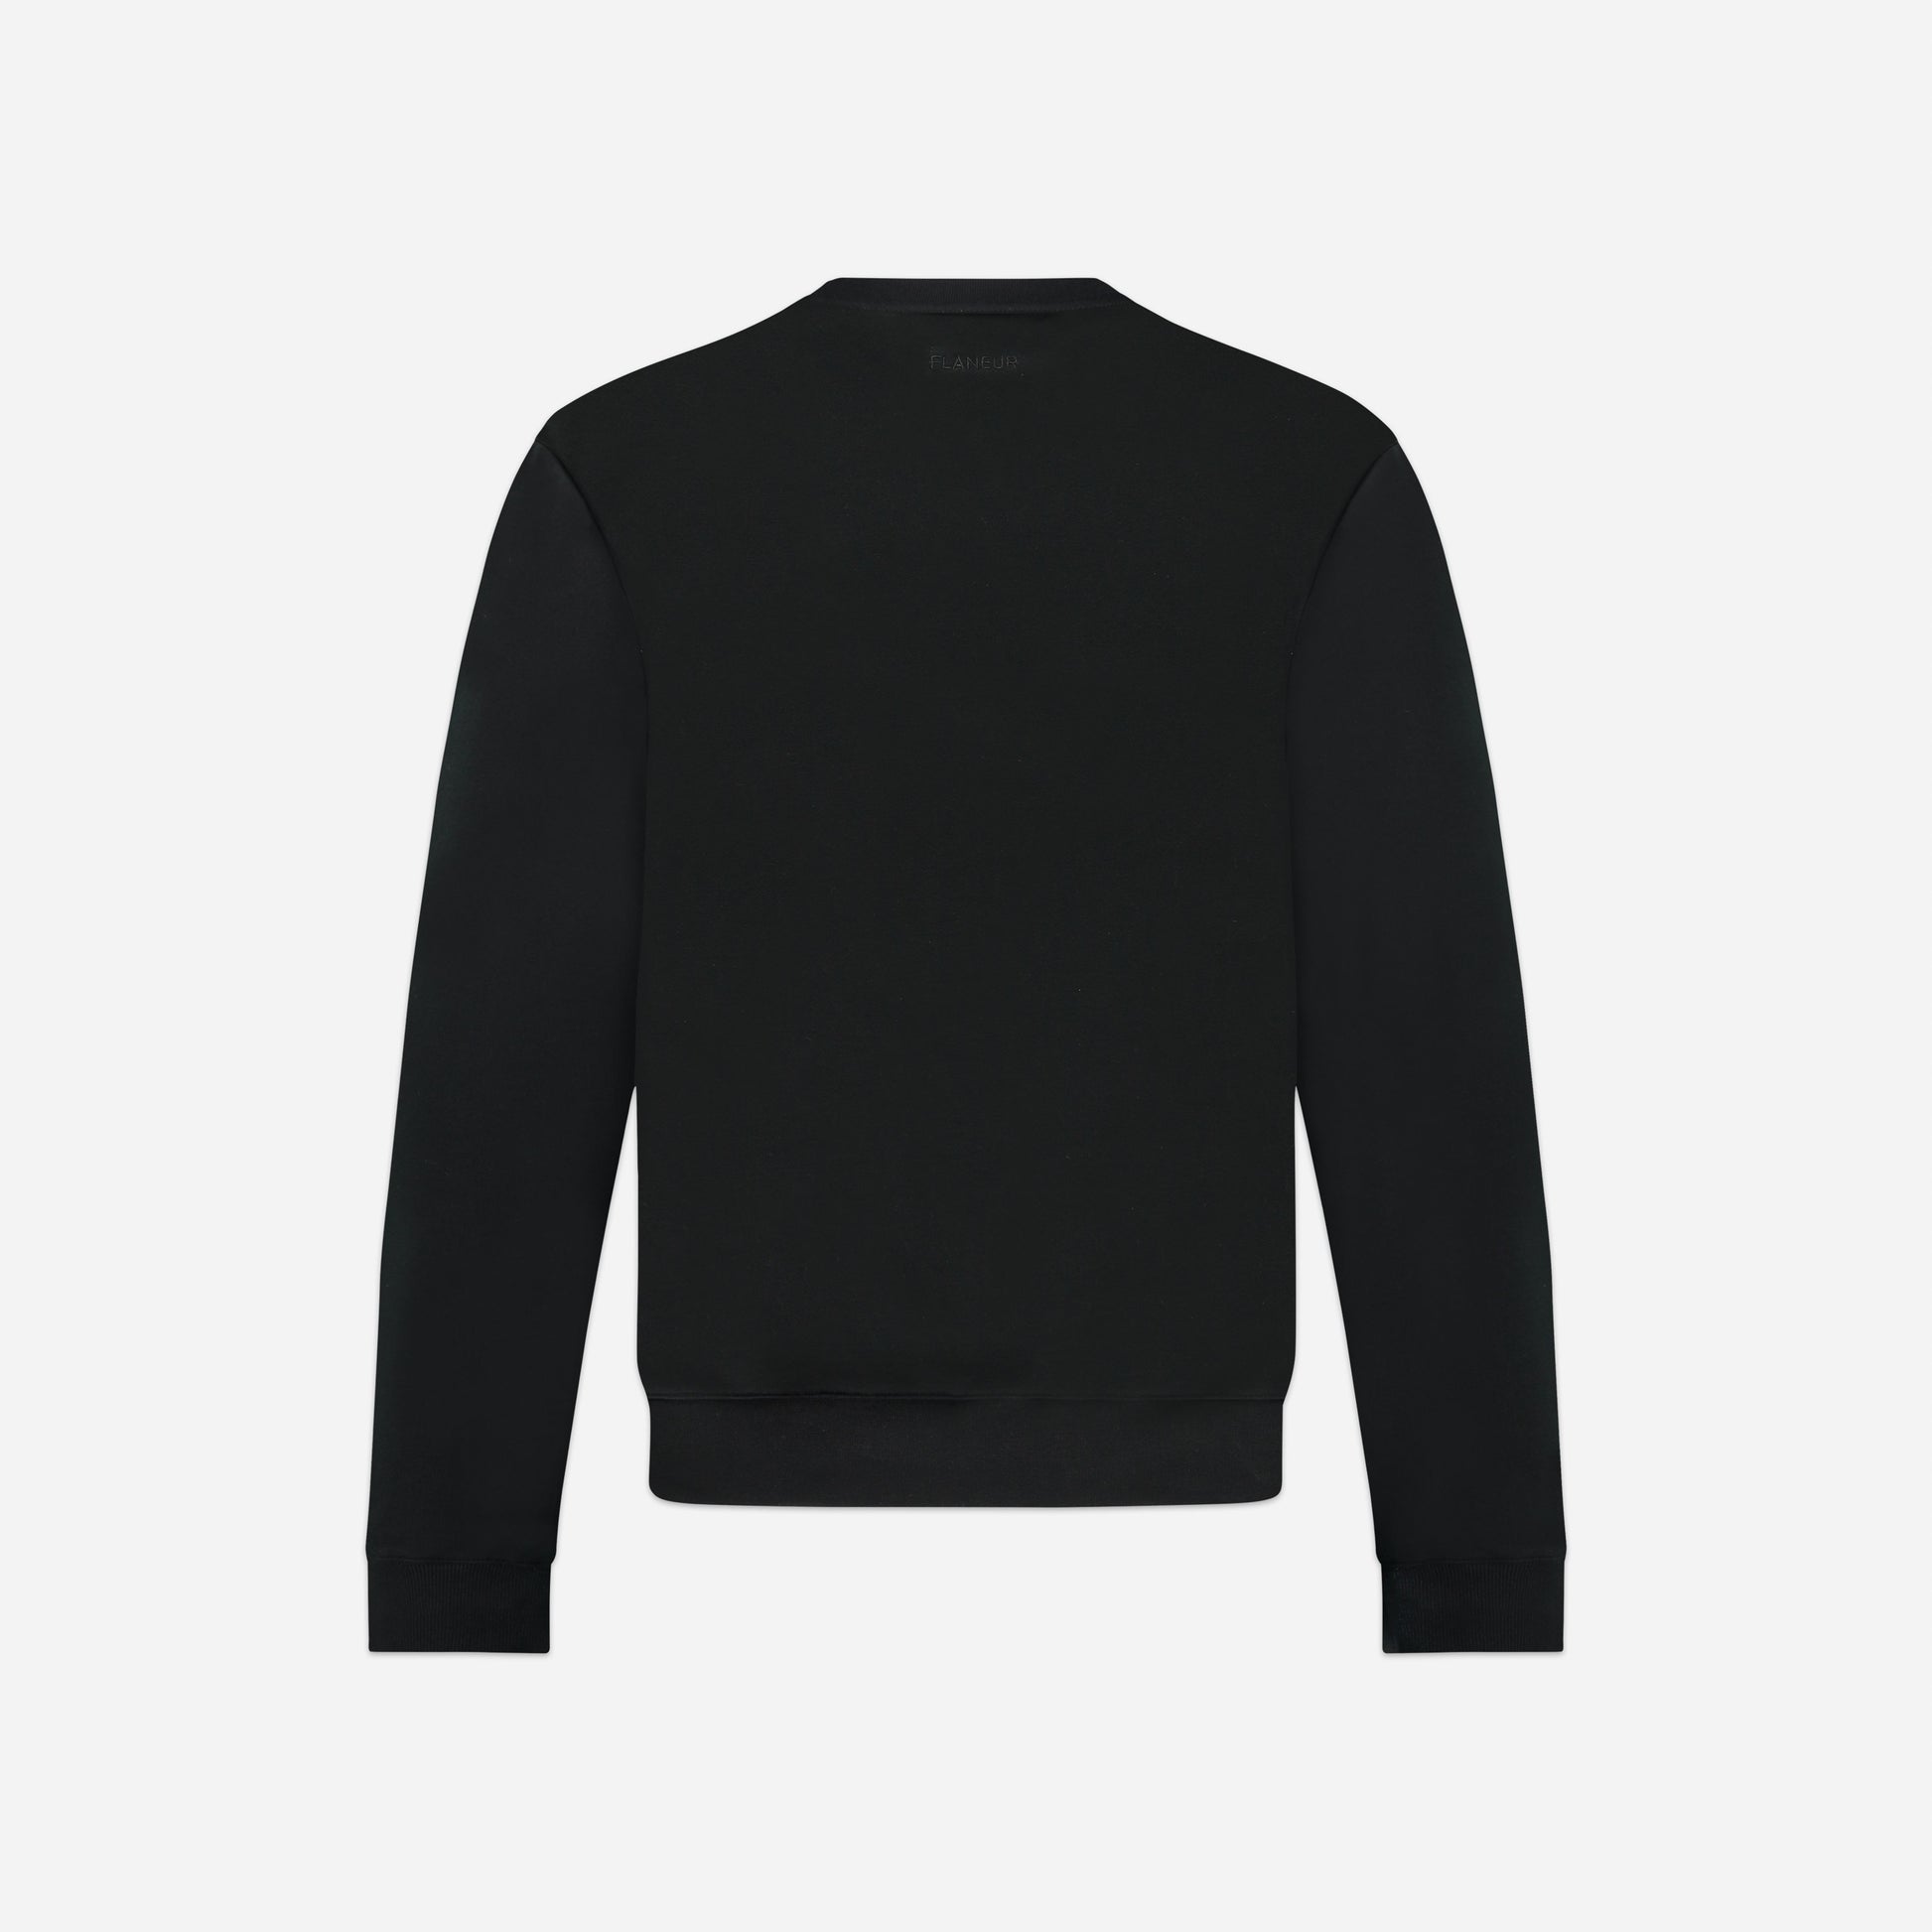 Signature Sweater Black